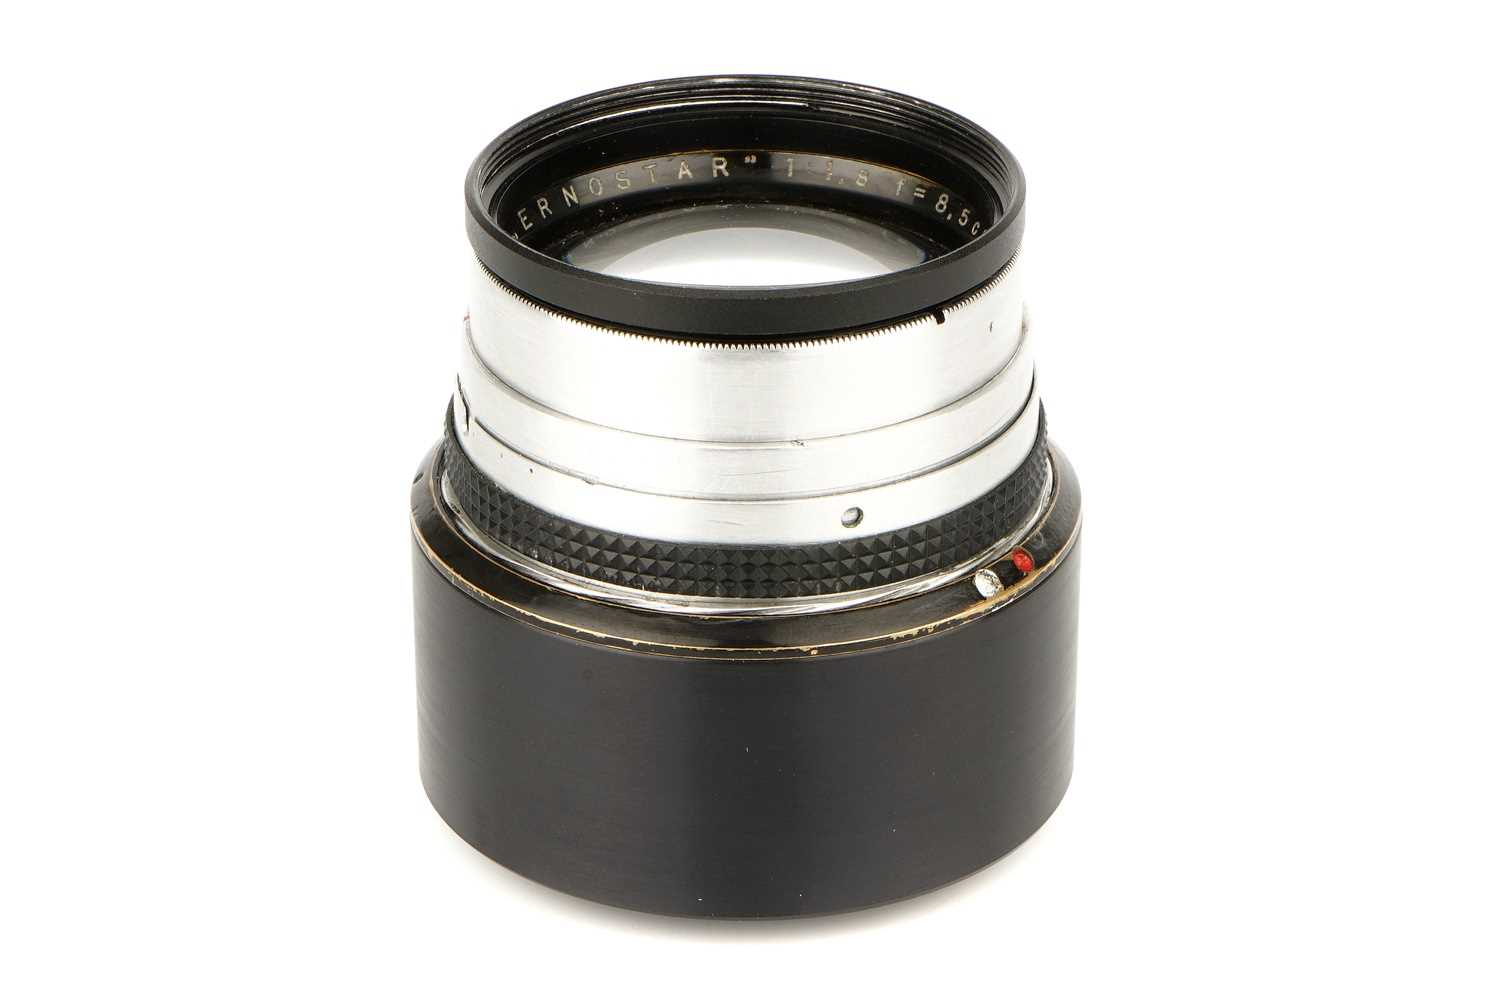 Lot 410 - An Ernemann Ernostar f/1.8 85mm Lens